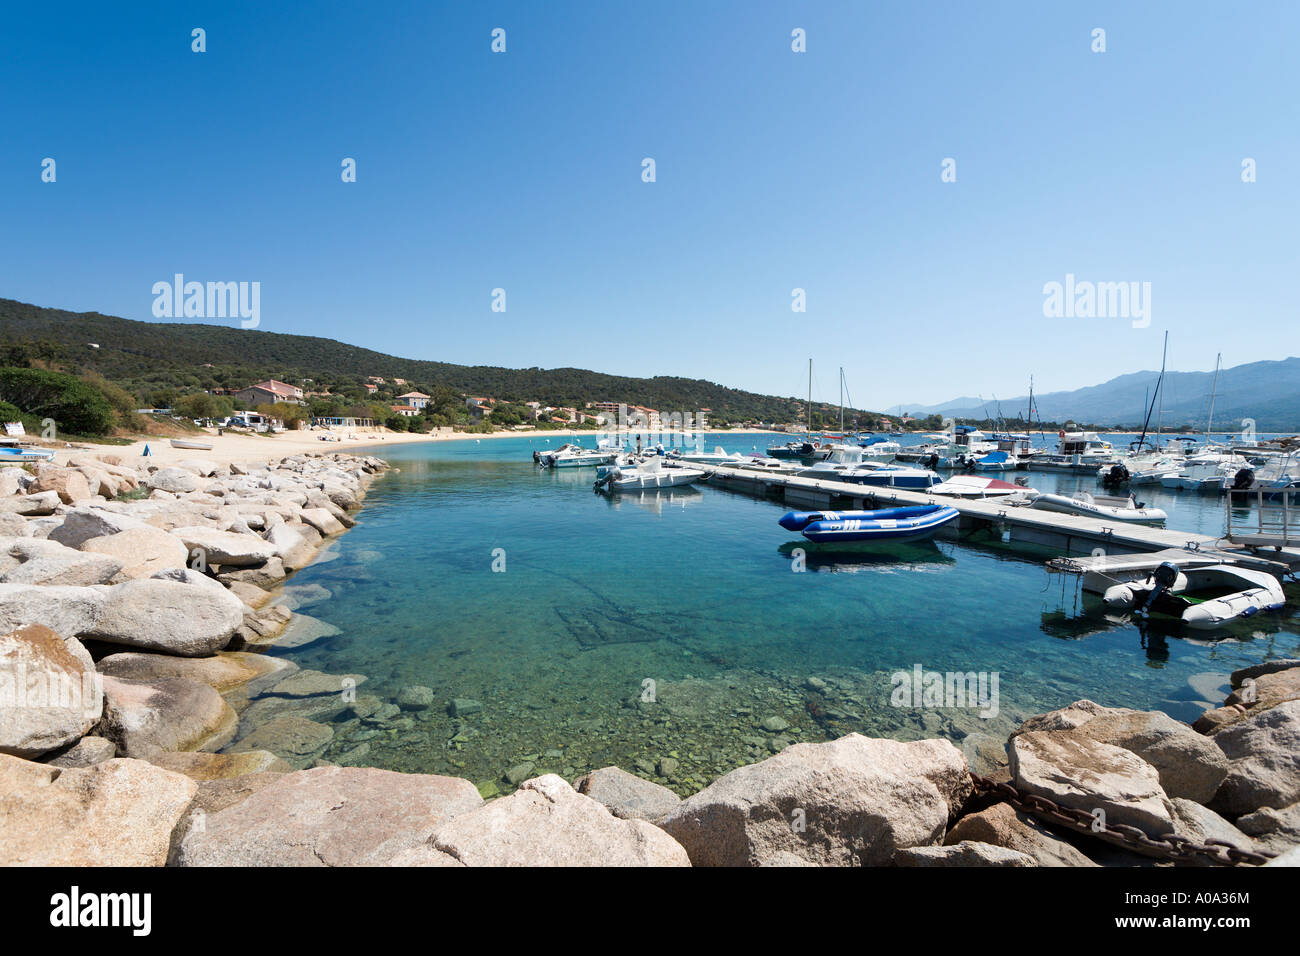 Harbour at Porto Pollo, near Propriano, Gulf of Valinco, Alta Rocca region, Corsica, France Stock Photo